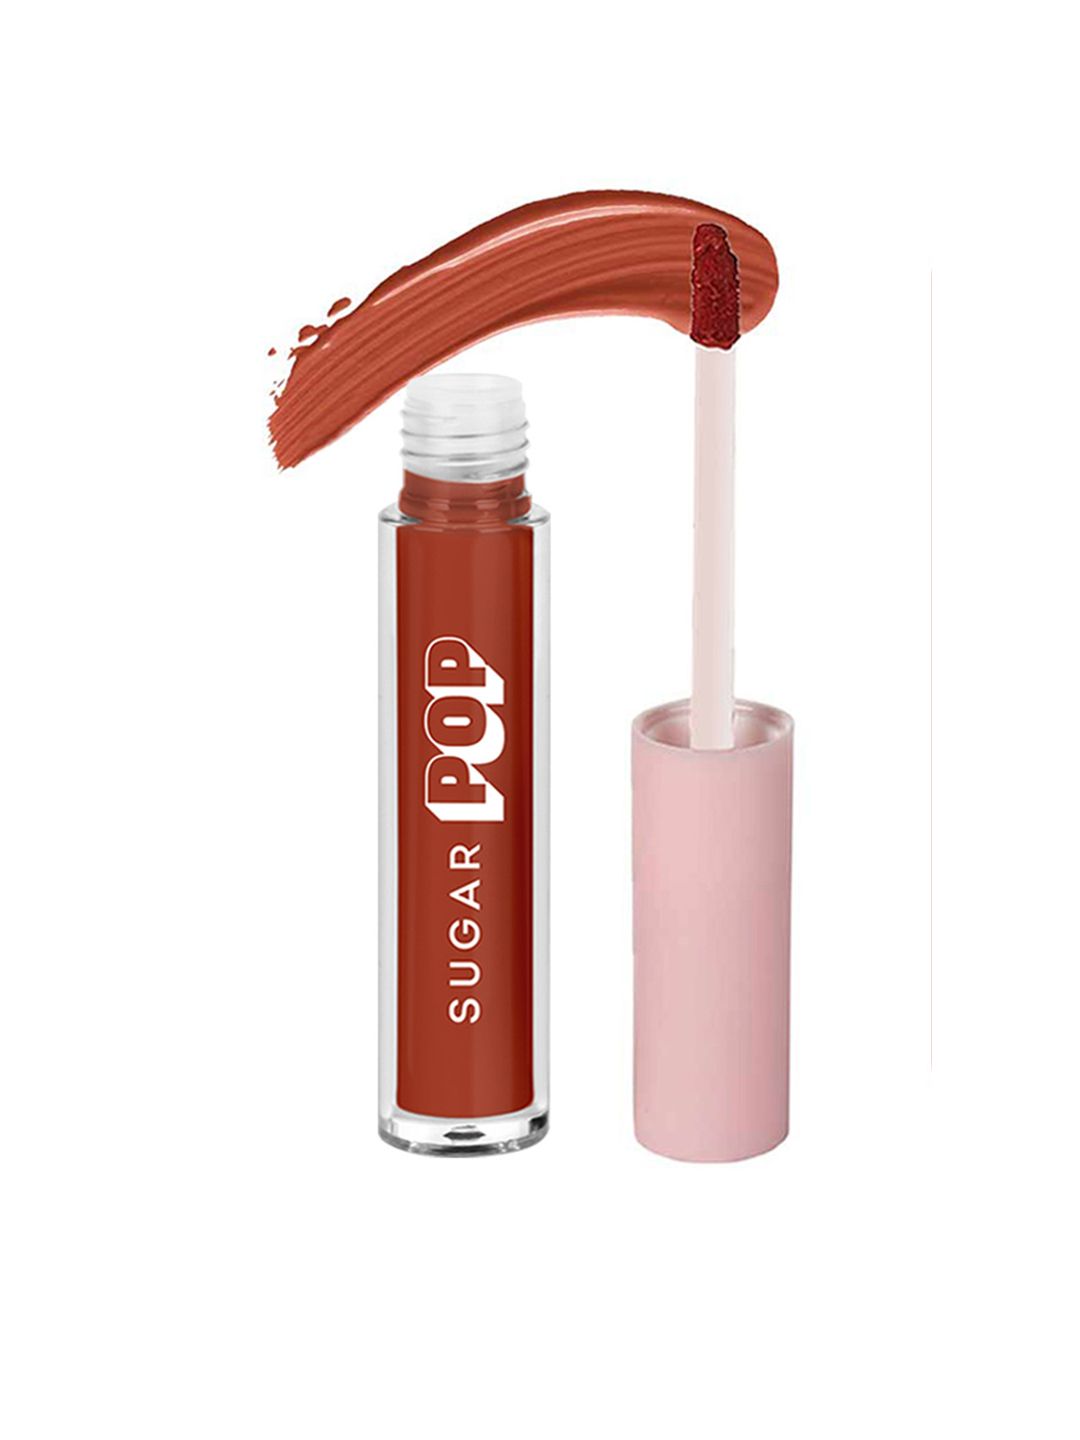 SUGAR POP Non-Drying Transfer Proof Matte Finish Liquid Lipstick 2.5 ml - Mocha 04 Price in India